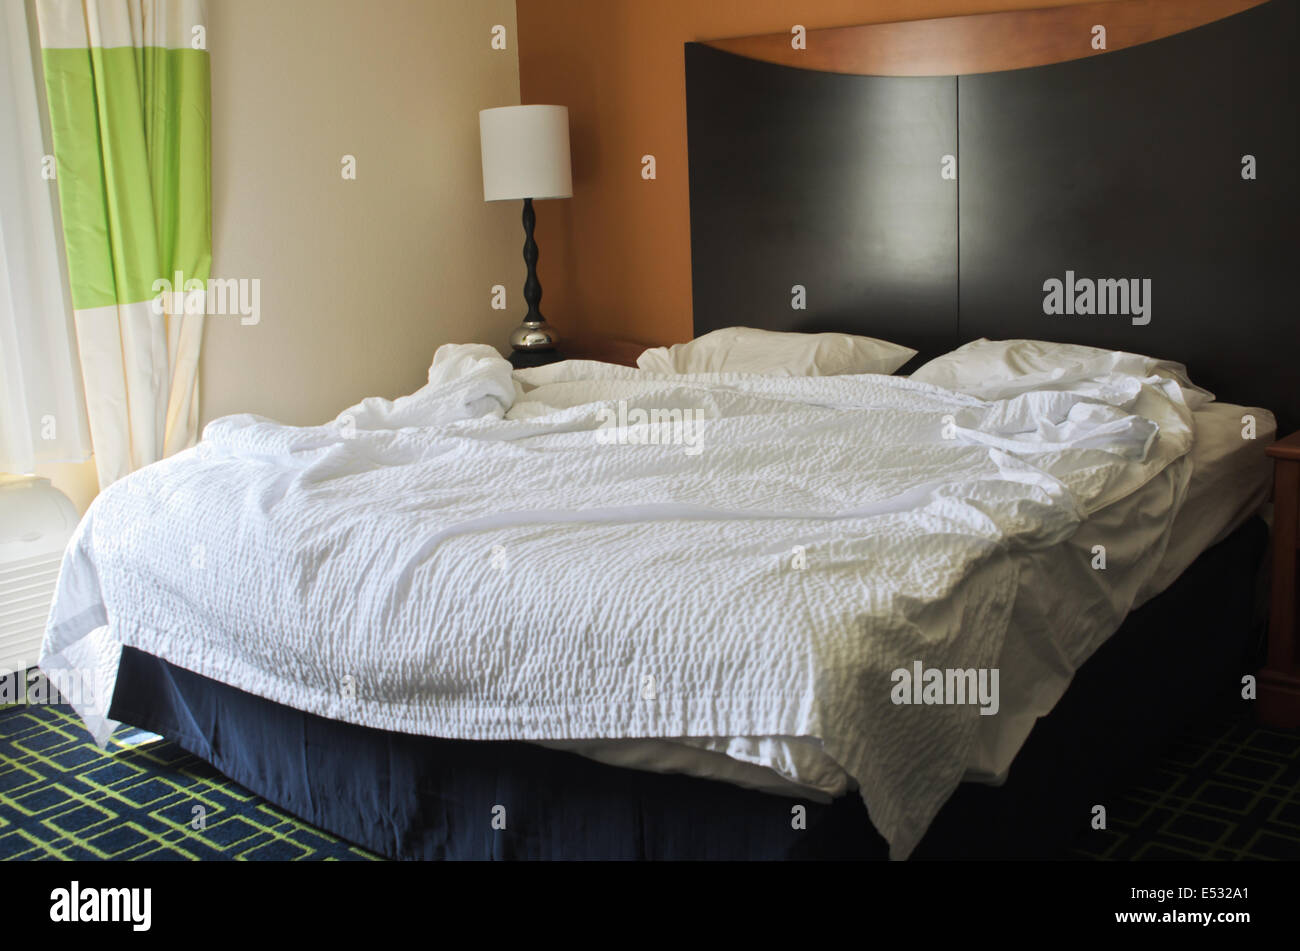 Unordentlichen Bett im Hotelzimmer Stockfoto